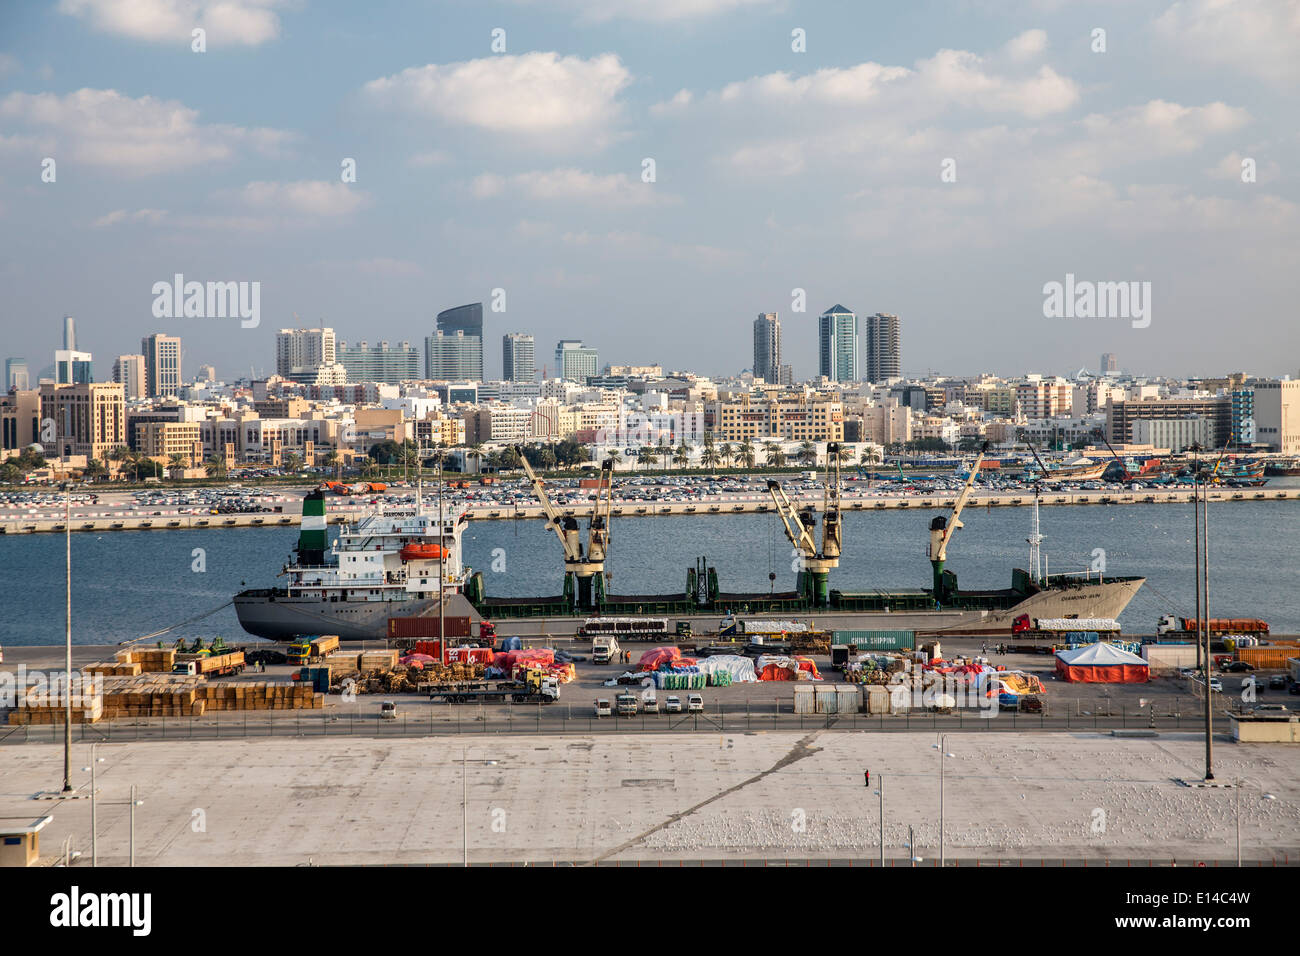 Emirats arabes unis, dubaï, Port, d'un cargo, Skyline Banque D'Images